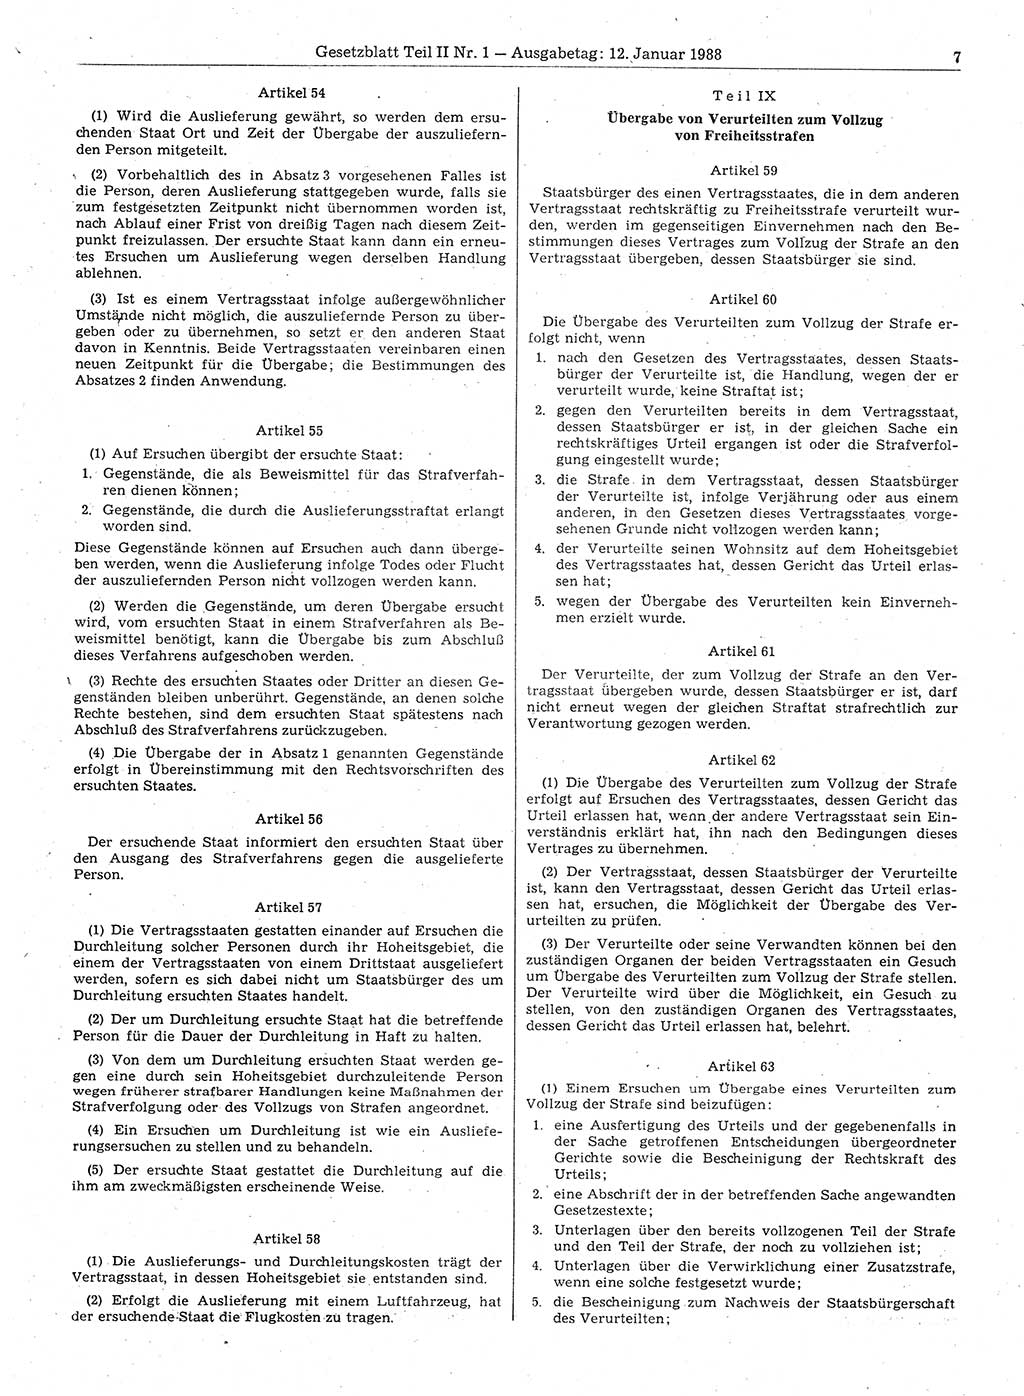 Gesetzblatt (GBl.) der Deutschen Demokratischen Republik (DDR) Teil ⅠⅠ 1988, Seite 7 (GBl. DDR ⅠⅠ 1988, S. 7)